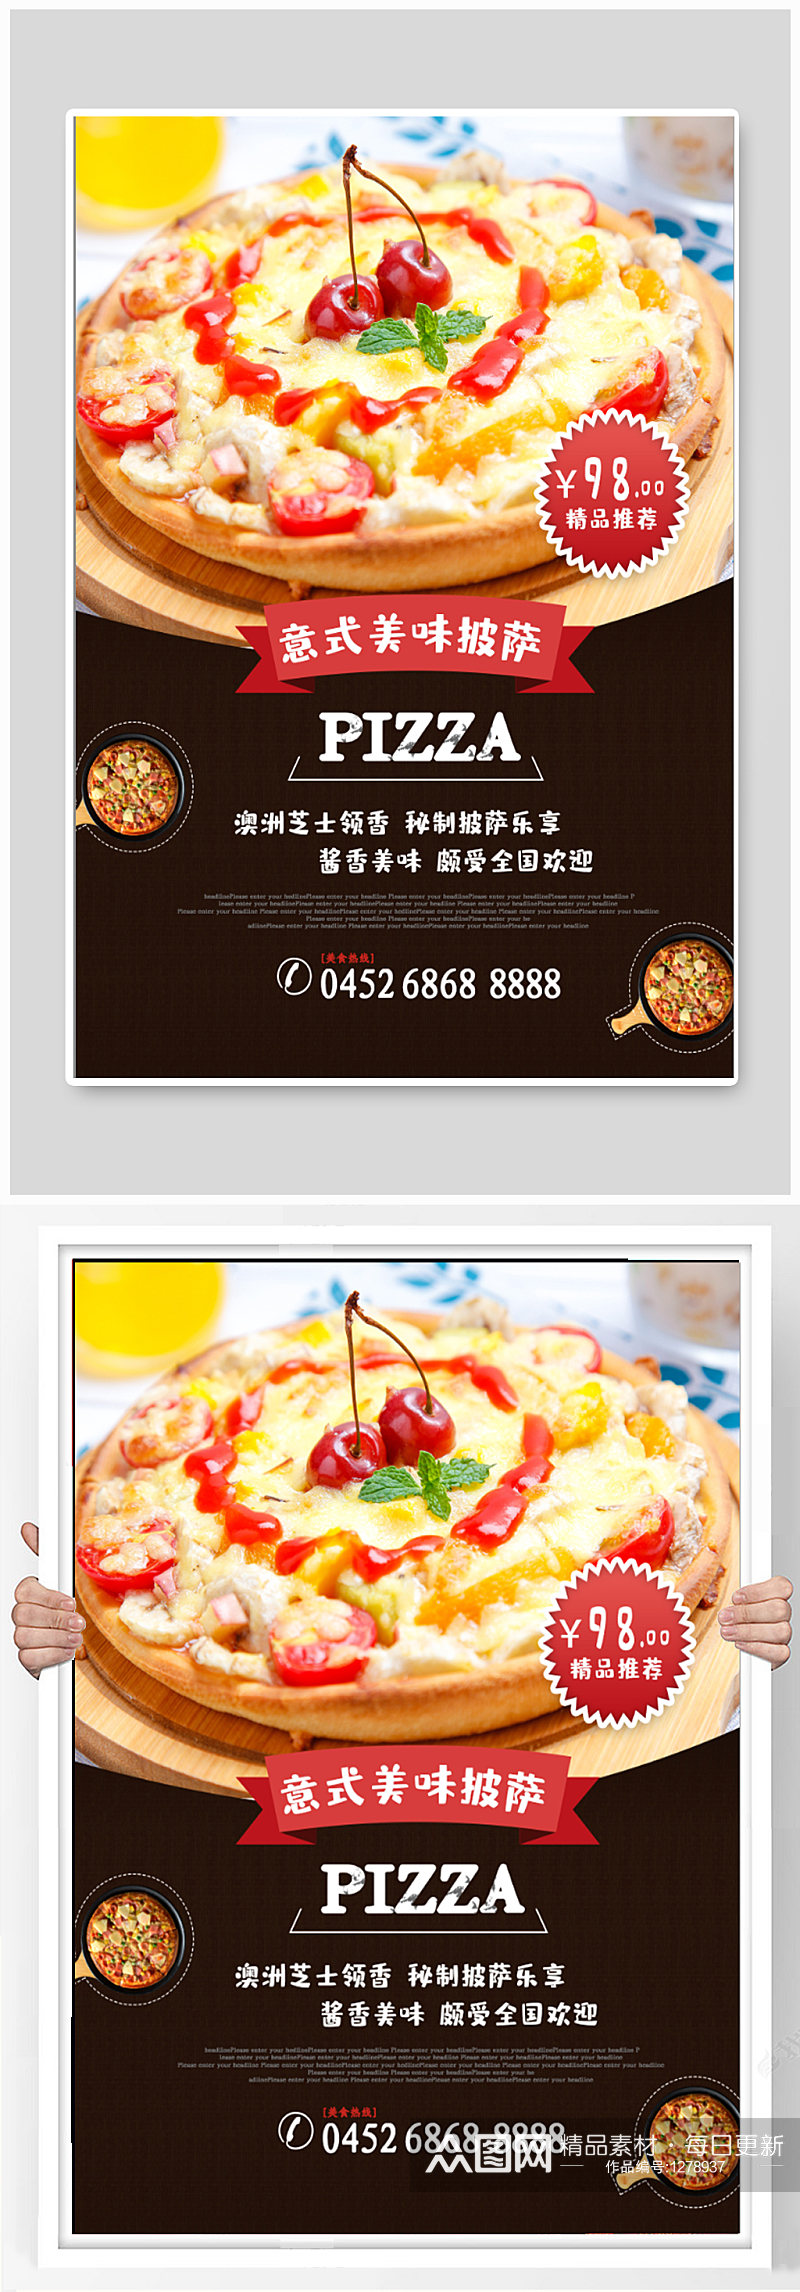 披萨美食宣传海报素材